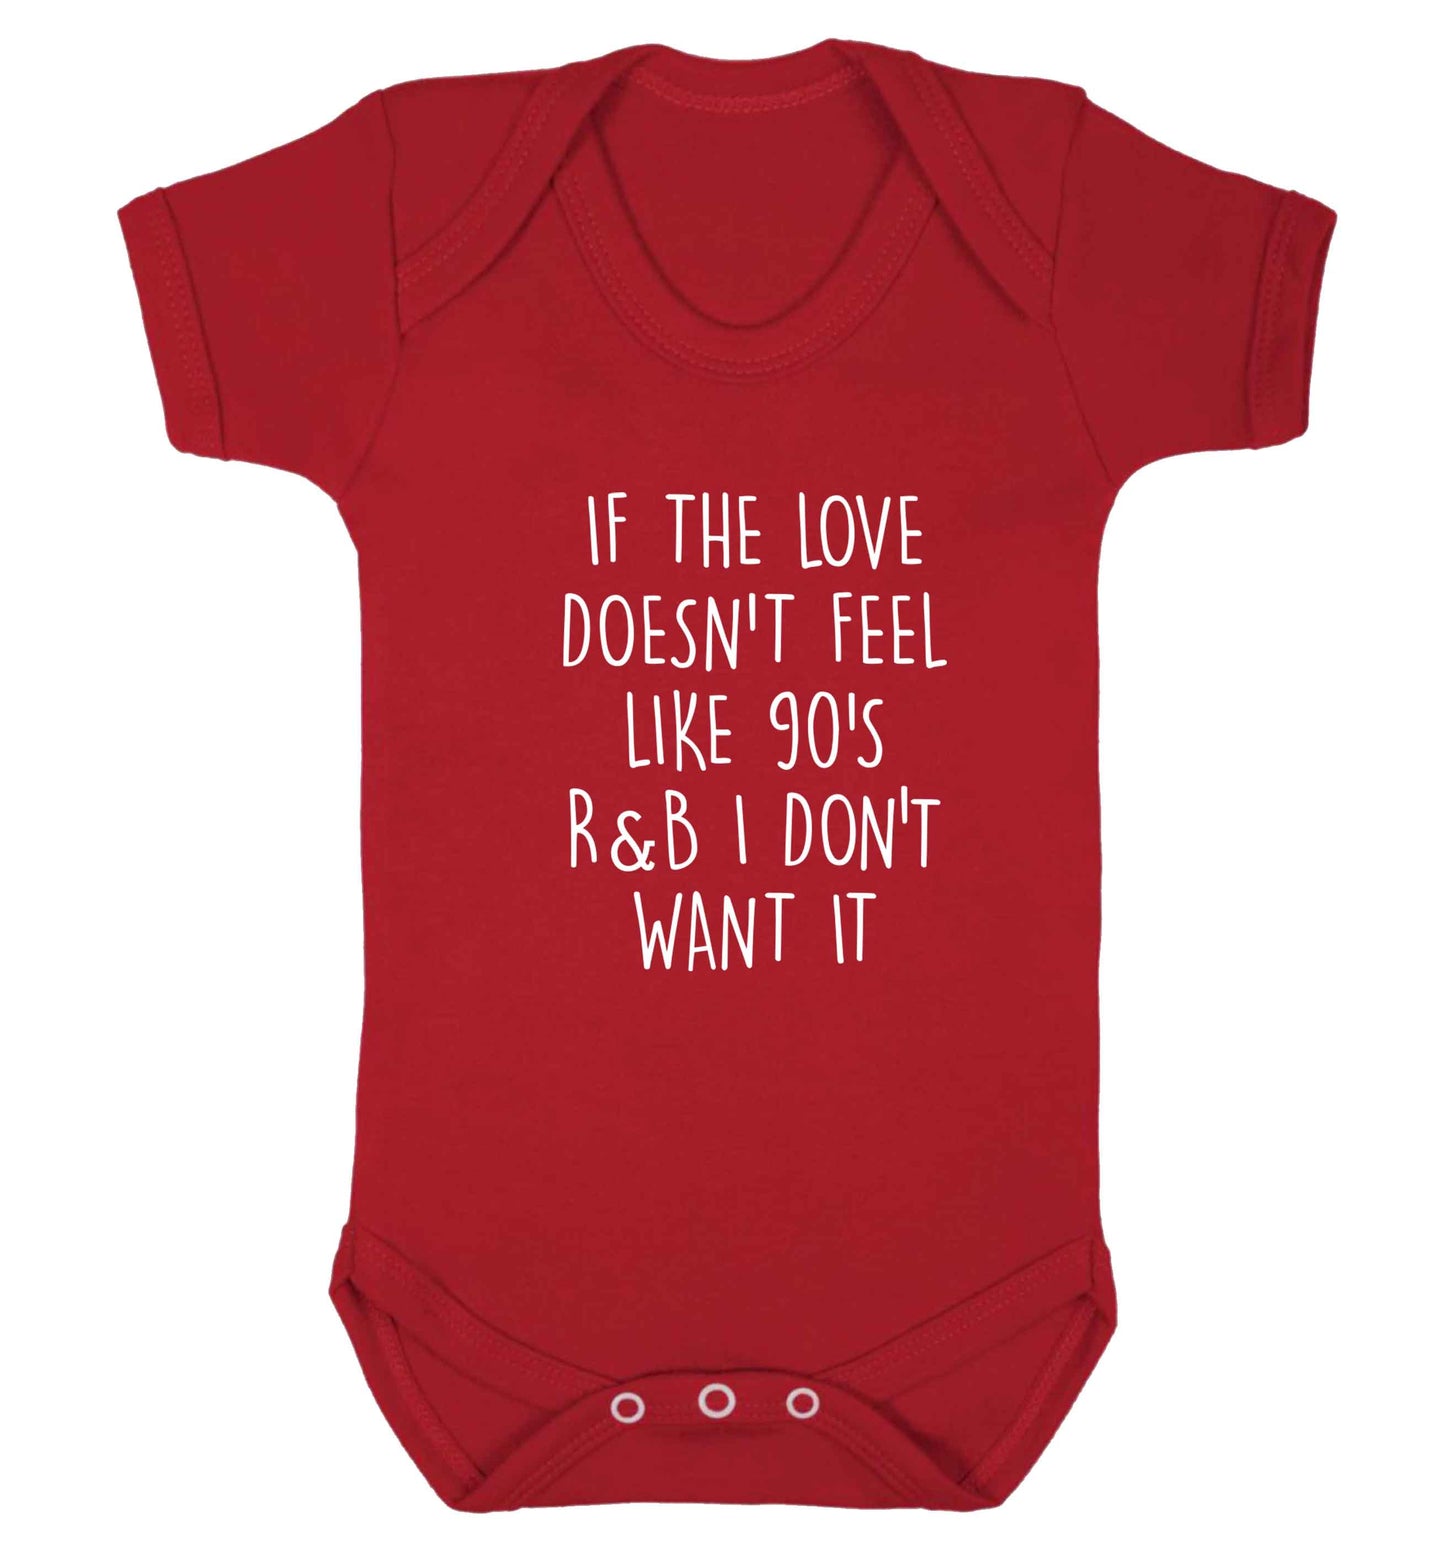 If the love doesn't feel like 90's r&b I don't want it baby vest red 18-24 months